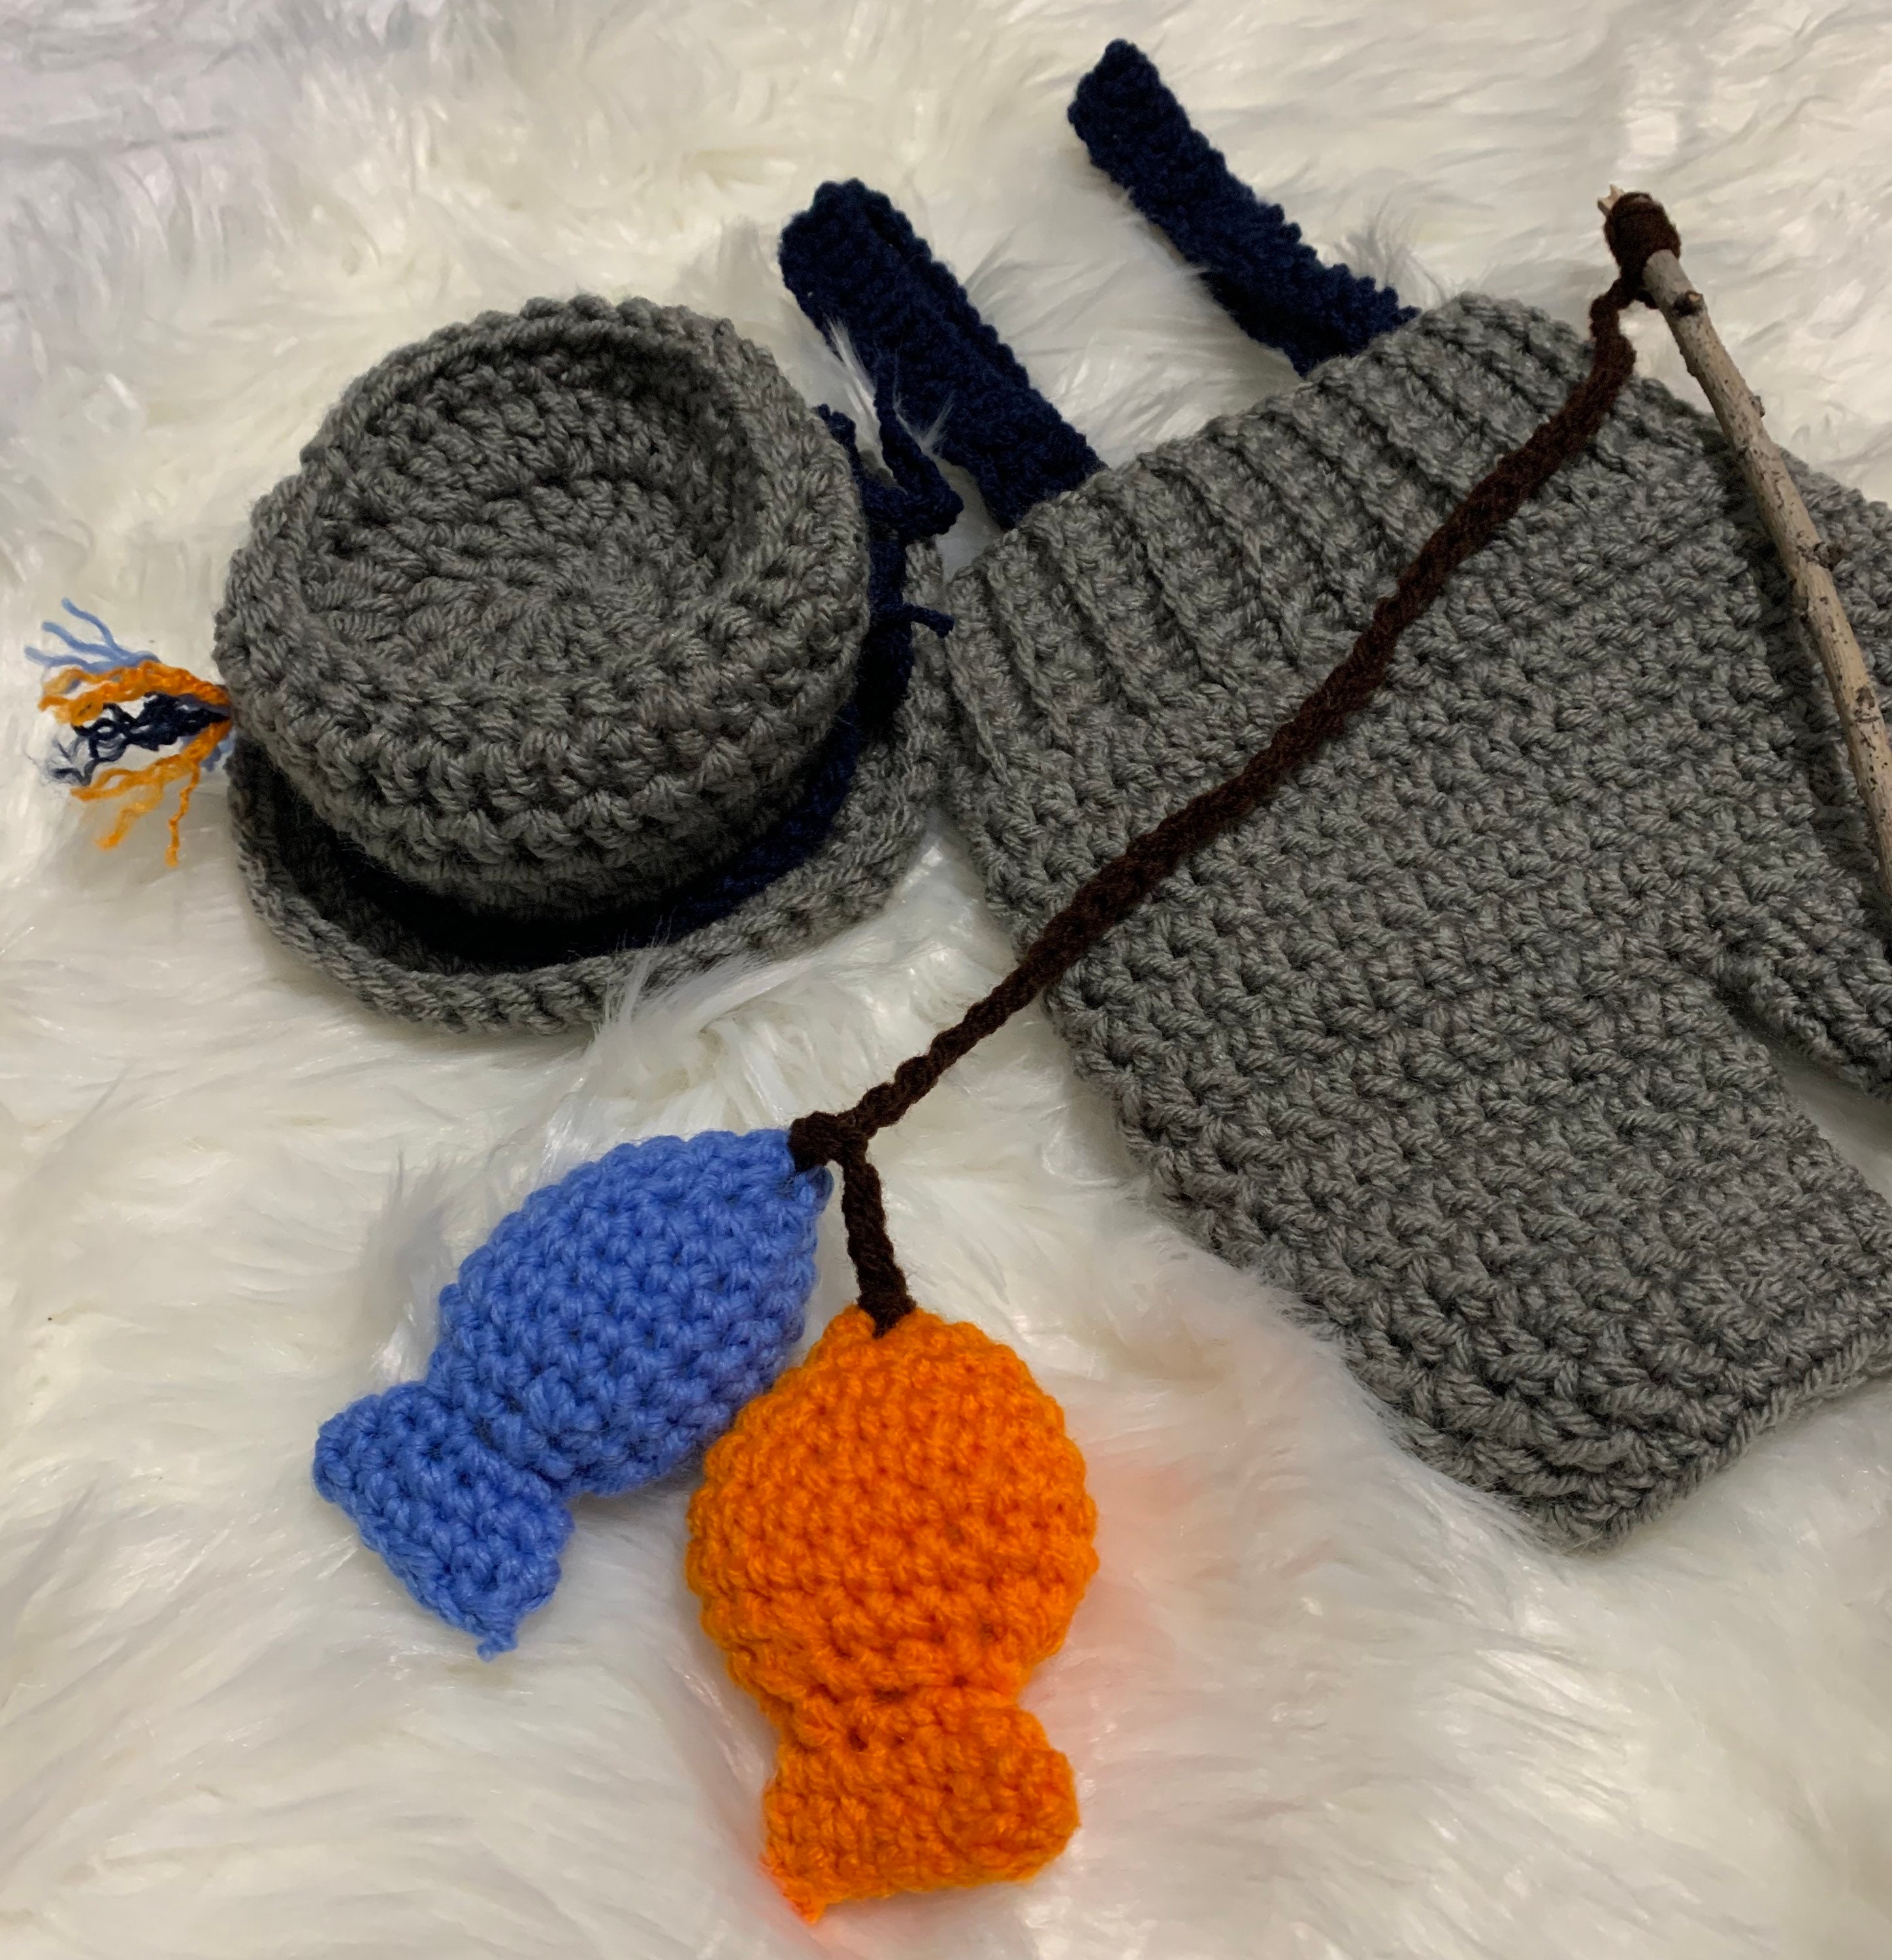 Fishing Outfit/ Newborn Fishing Photo Prop/ Crochet Fishing Outfit 